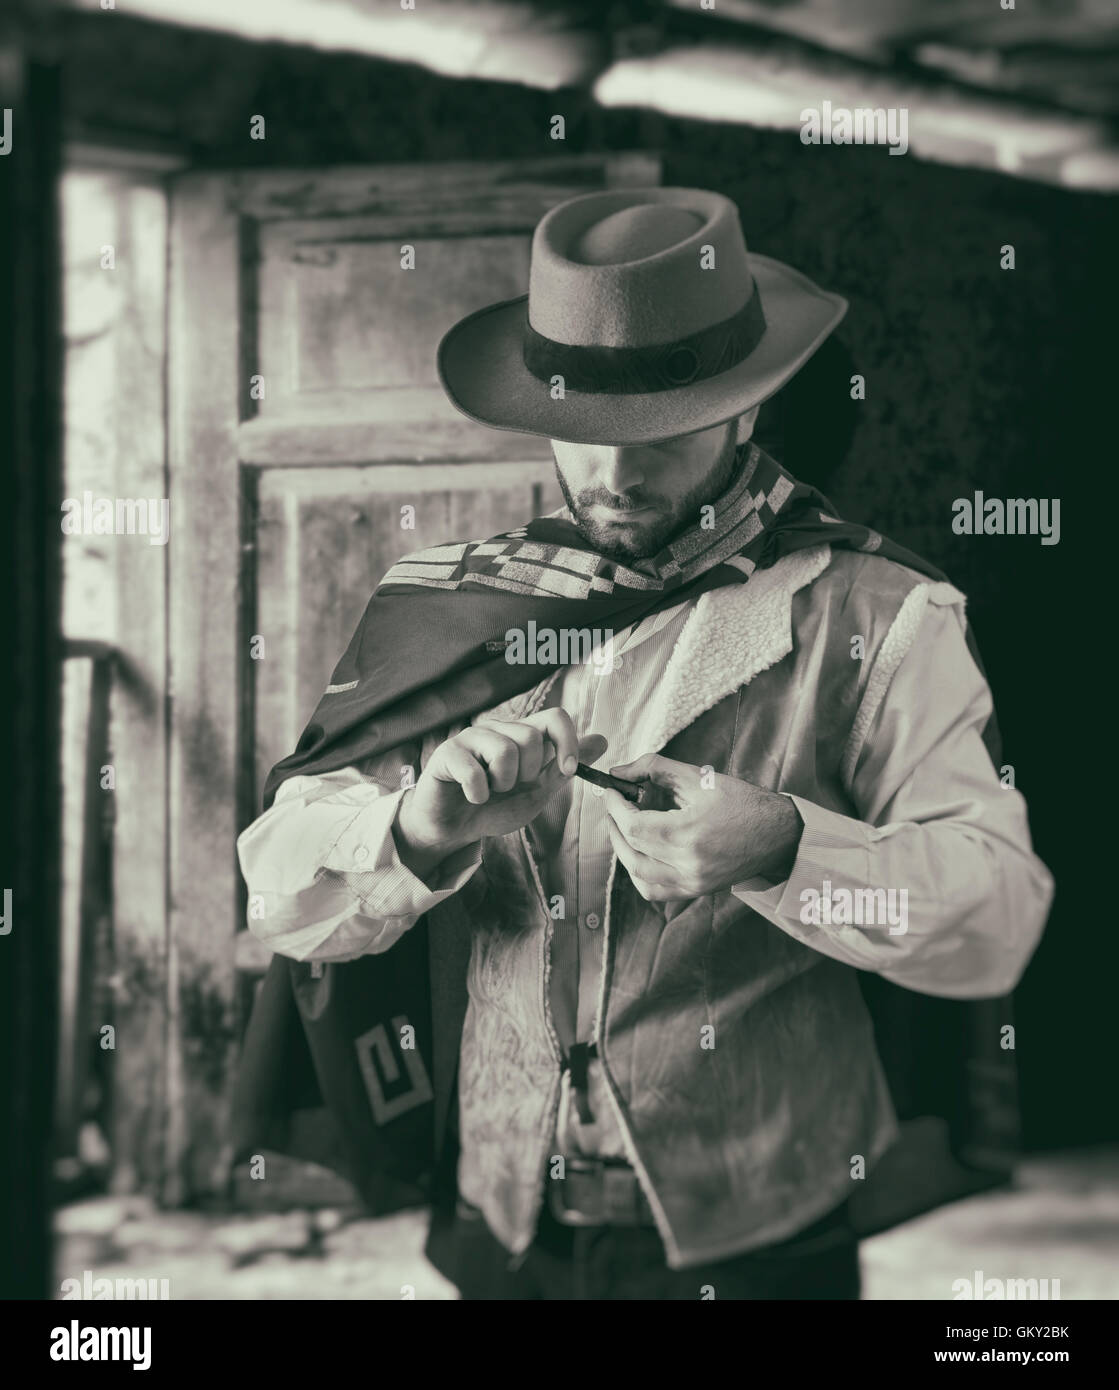 Pistolero del salvaje oeste mientras se desplaza por el tabaco. Imagen en blanco y negro. Foto de stock